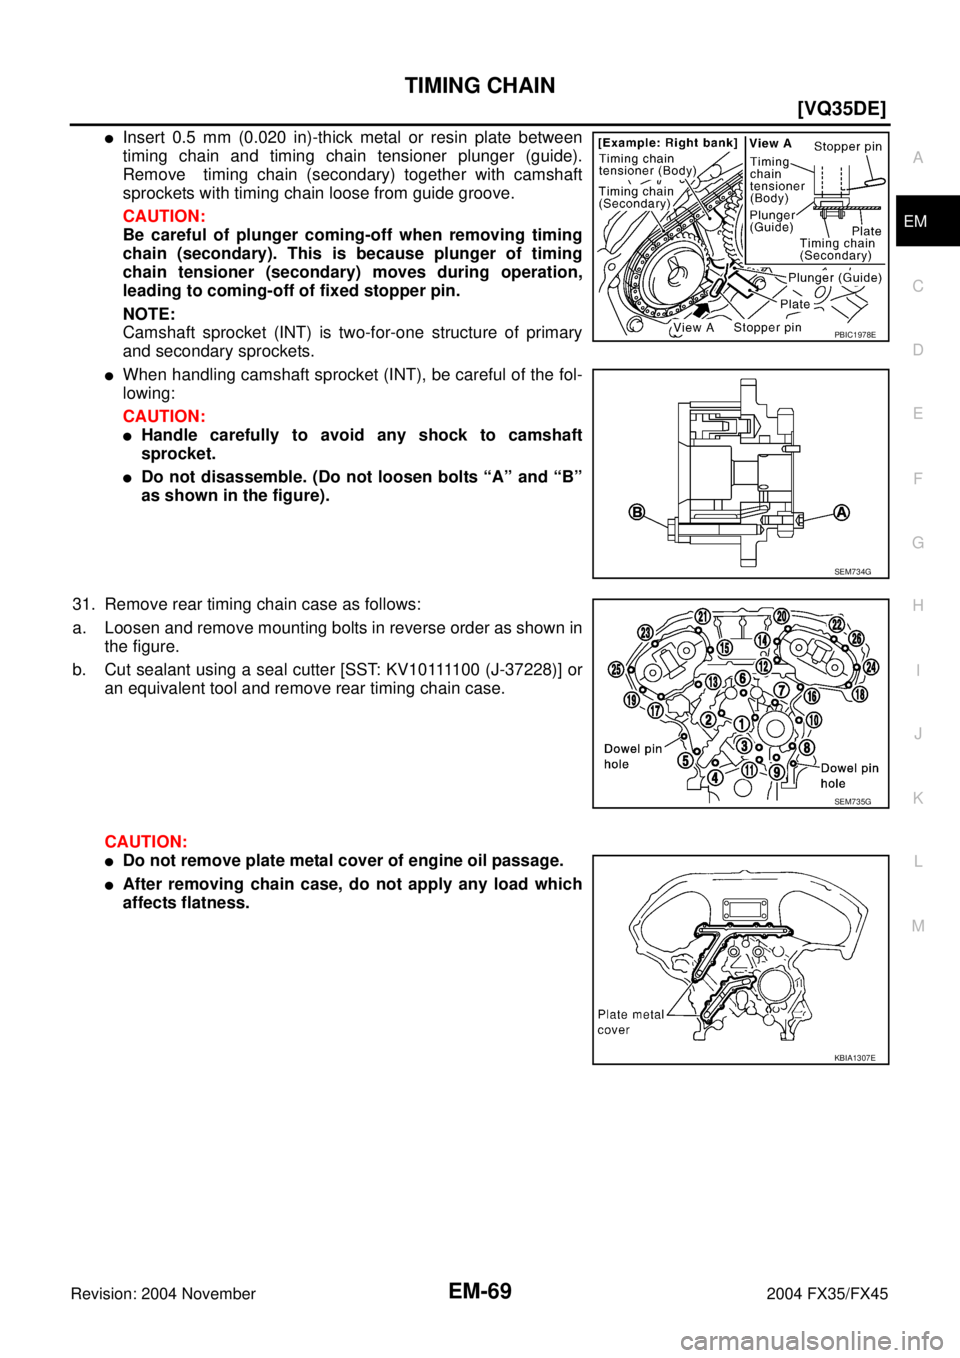 INFINITI FX35 2004  Service Manual TIMING CHAIN
EM-69
[VQ35DE]
C
D
E
F
G
H
I
J
K
L
MA
EM
Revision: 2004 November 2004 FX35/FX45
Insert 0.5 mm (0.020 in)-thick metal or resin plate between
timing chain and timing chain tensioner plunge